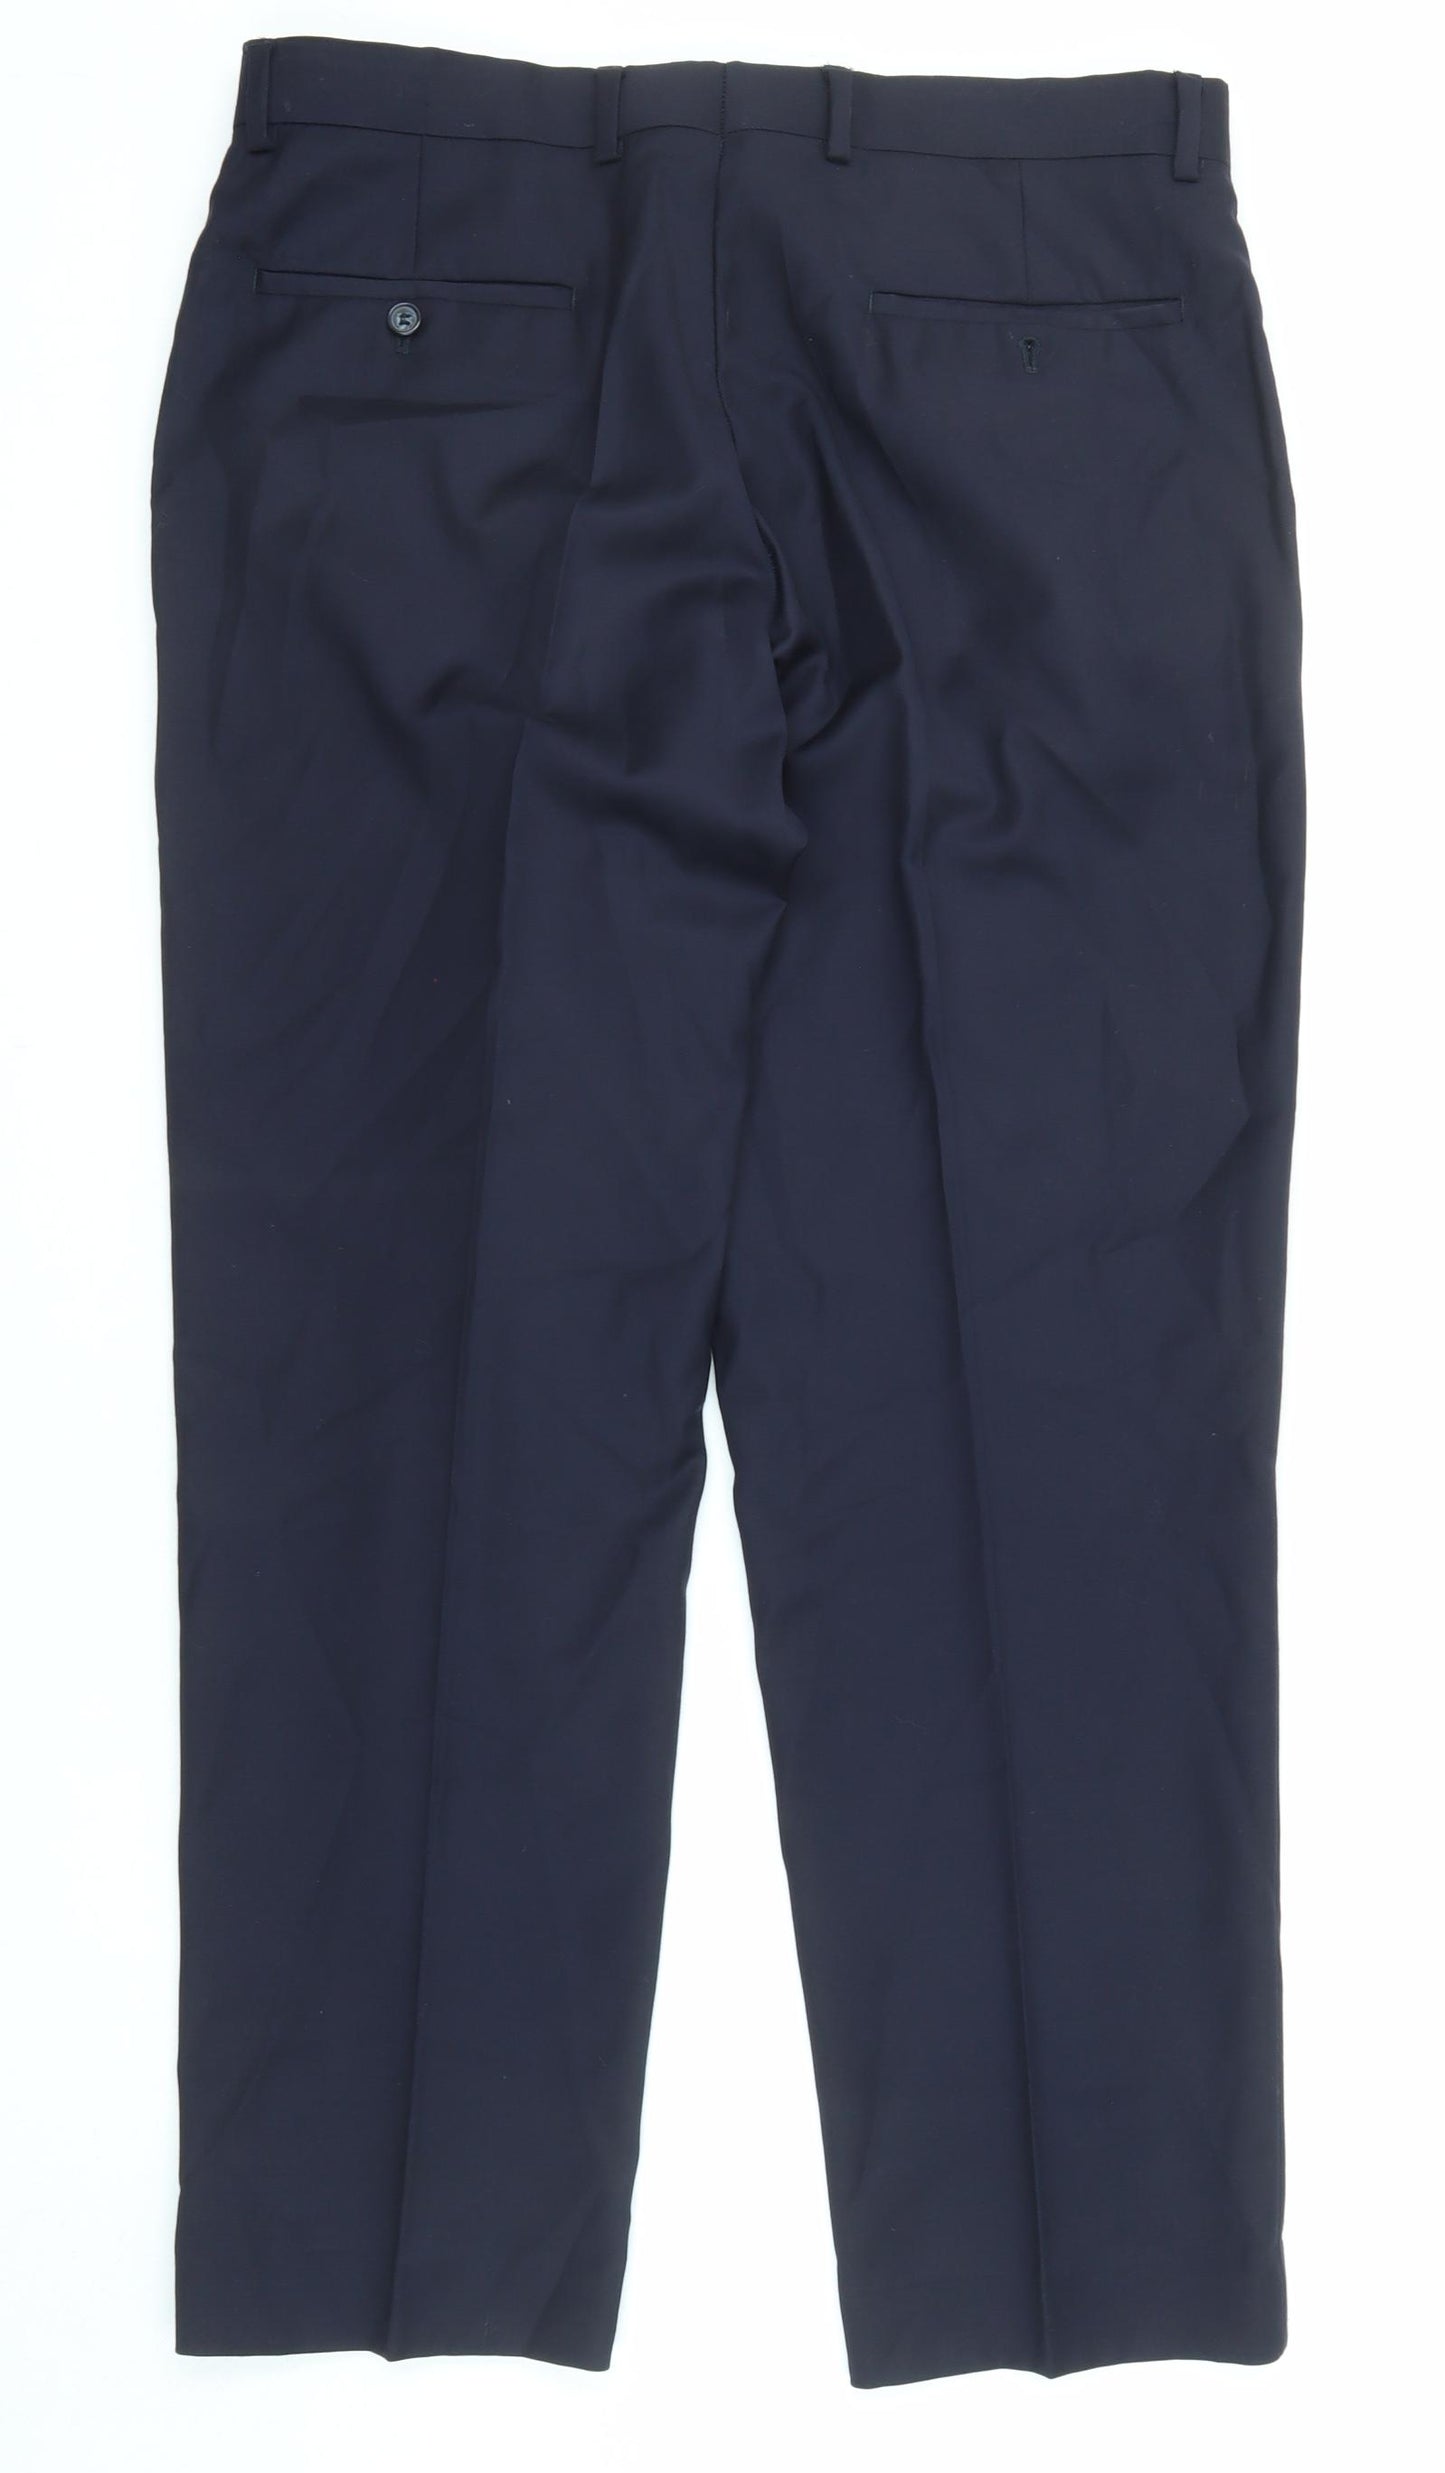 Samuel Windsor Mens Blue Wool Trousers Size 34 in L29 in Regular Zip